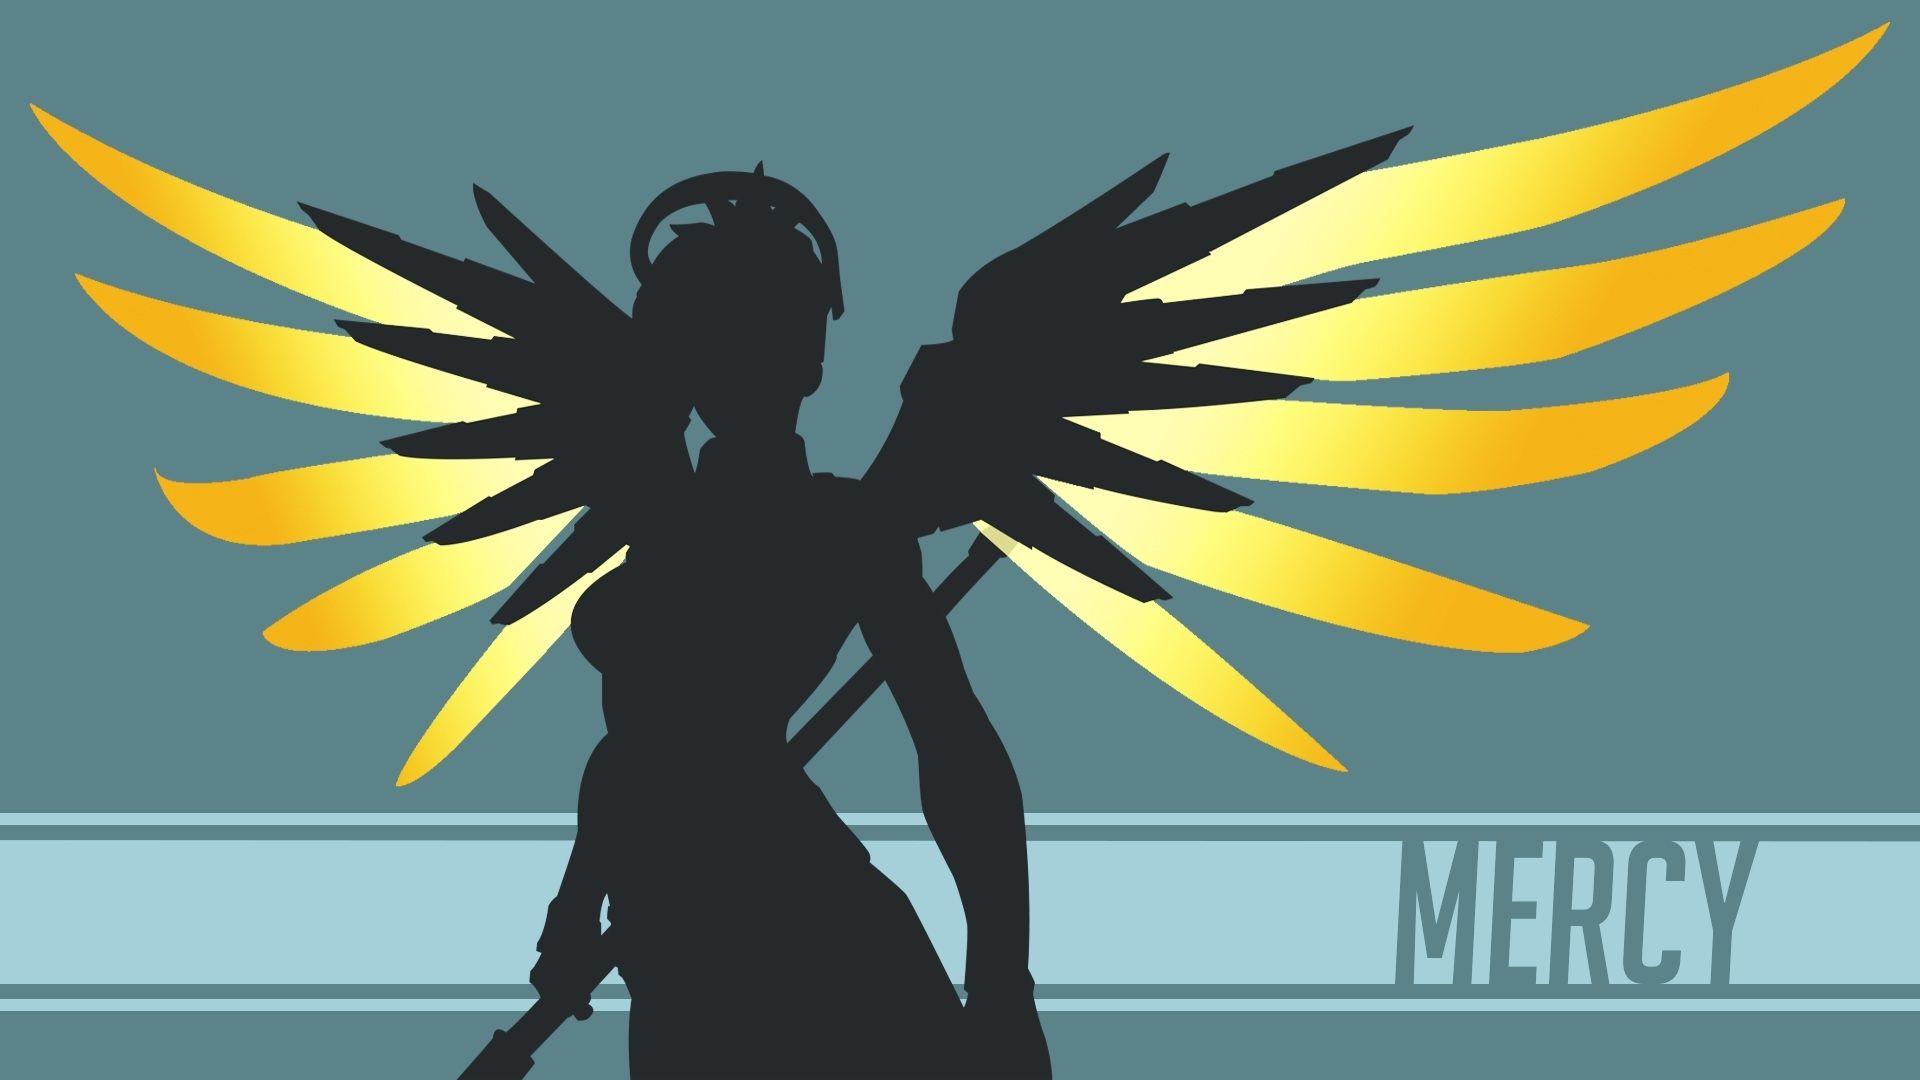 Mercy Overwatch Vector Wallpaper